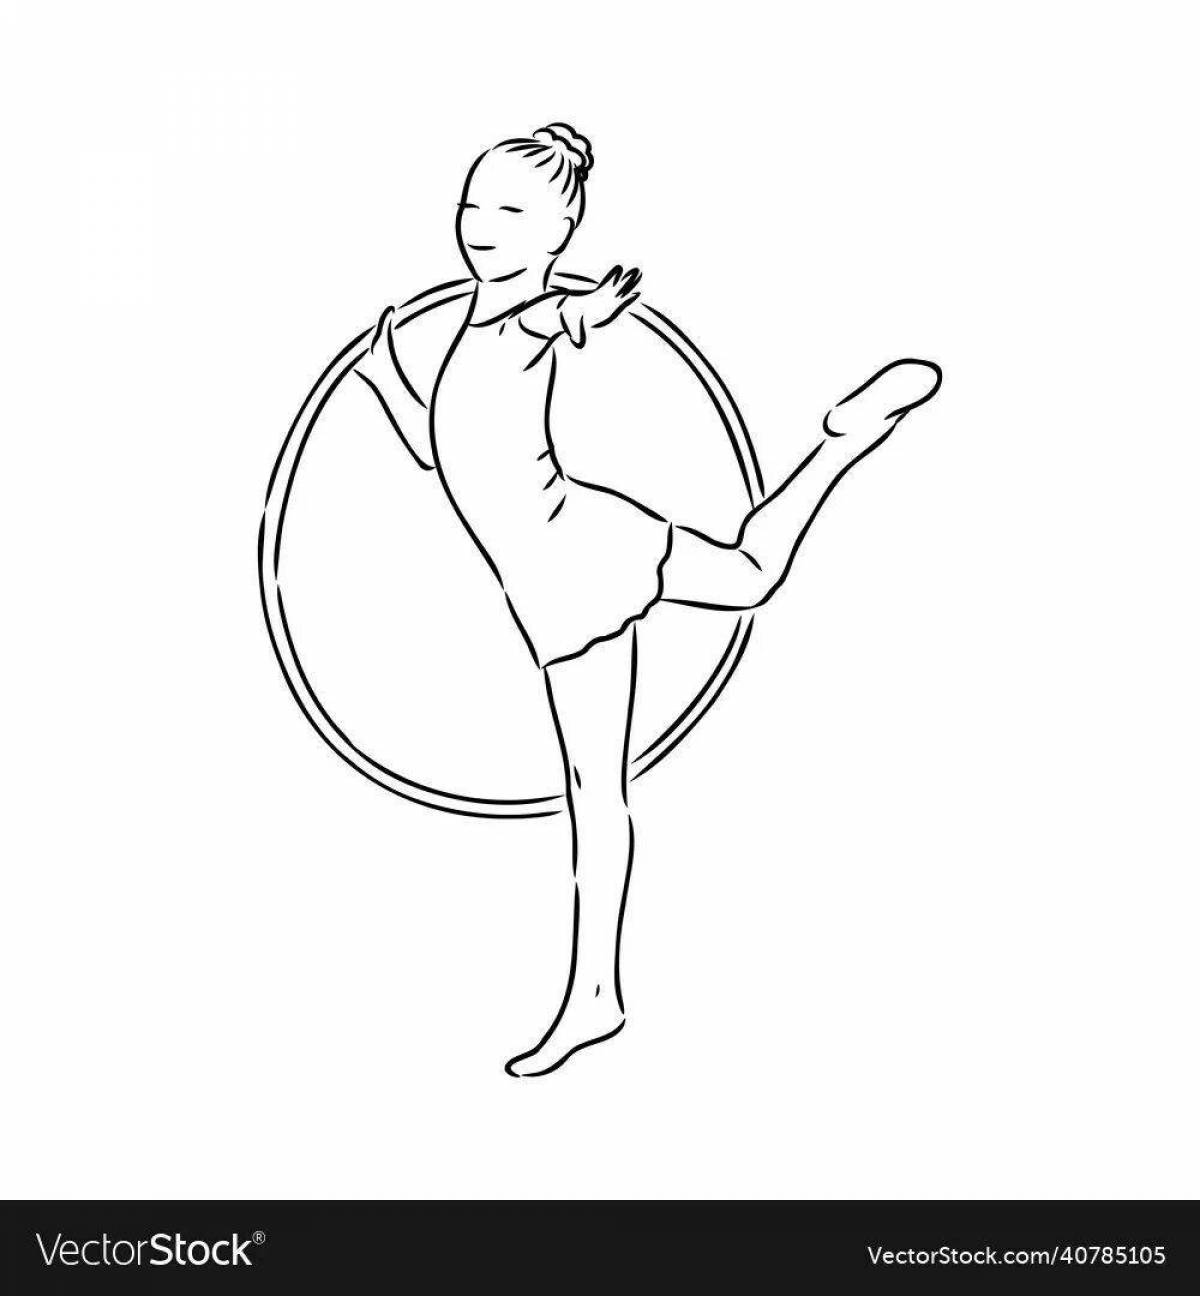 Раскраска Гимнастка распечатать бесплатно | Раскраски, Медитативные узоры, Искусство йоги